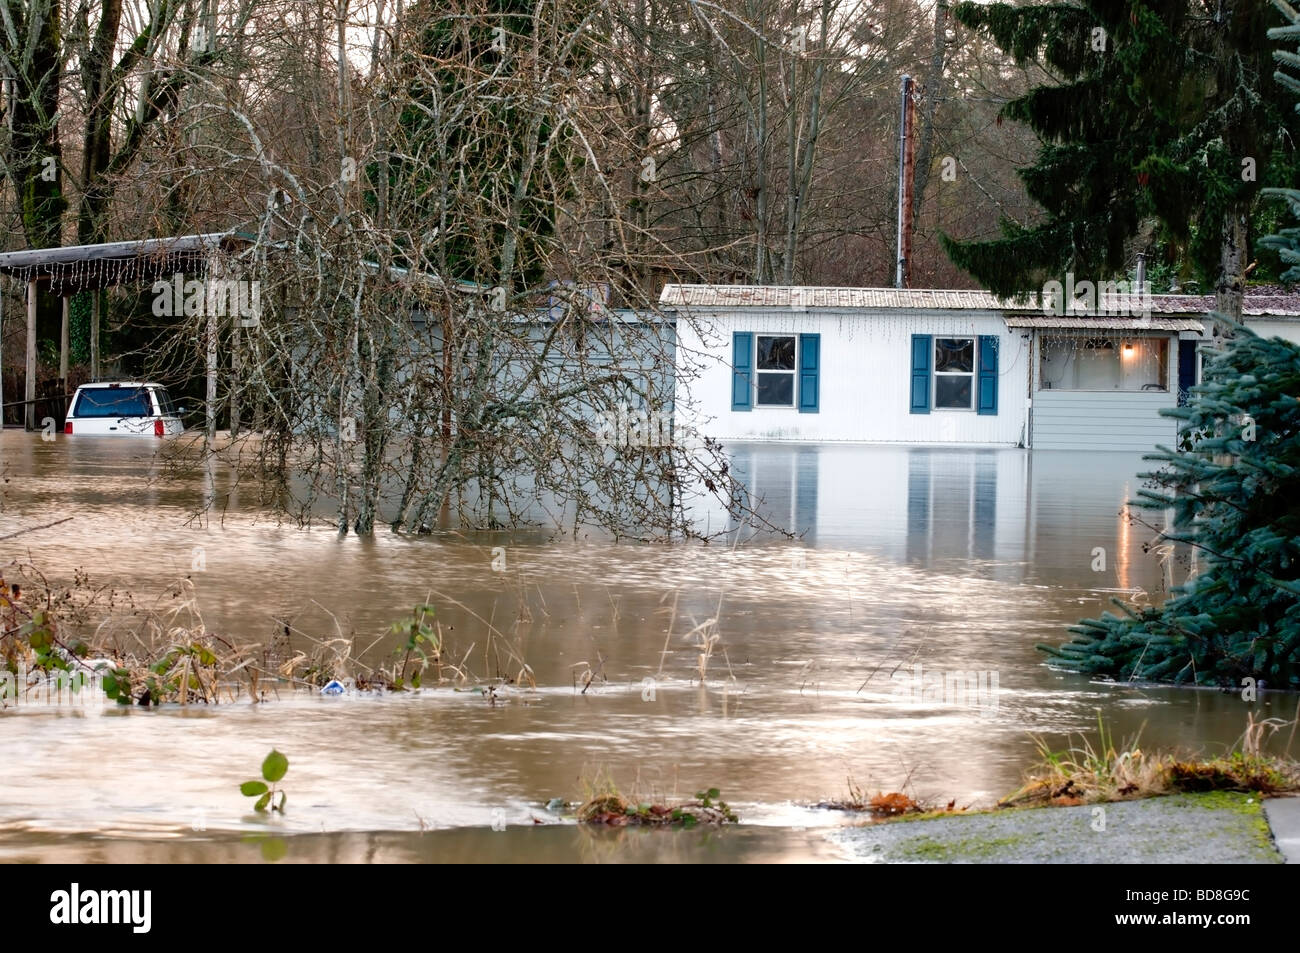 Straripamenti di fiumi hanno causato inondazioni nello Stato di Washington. Questa casa e auto sono sommersi in acqua Foto Stock